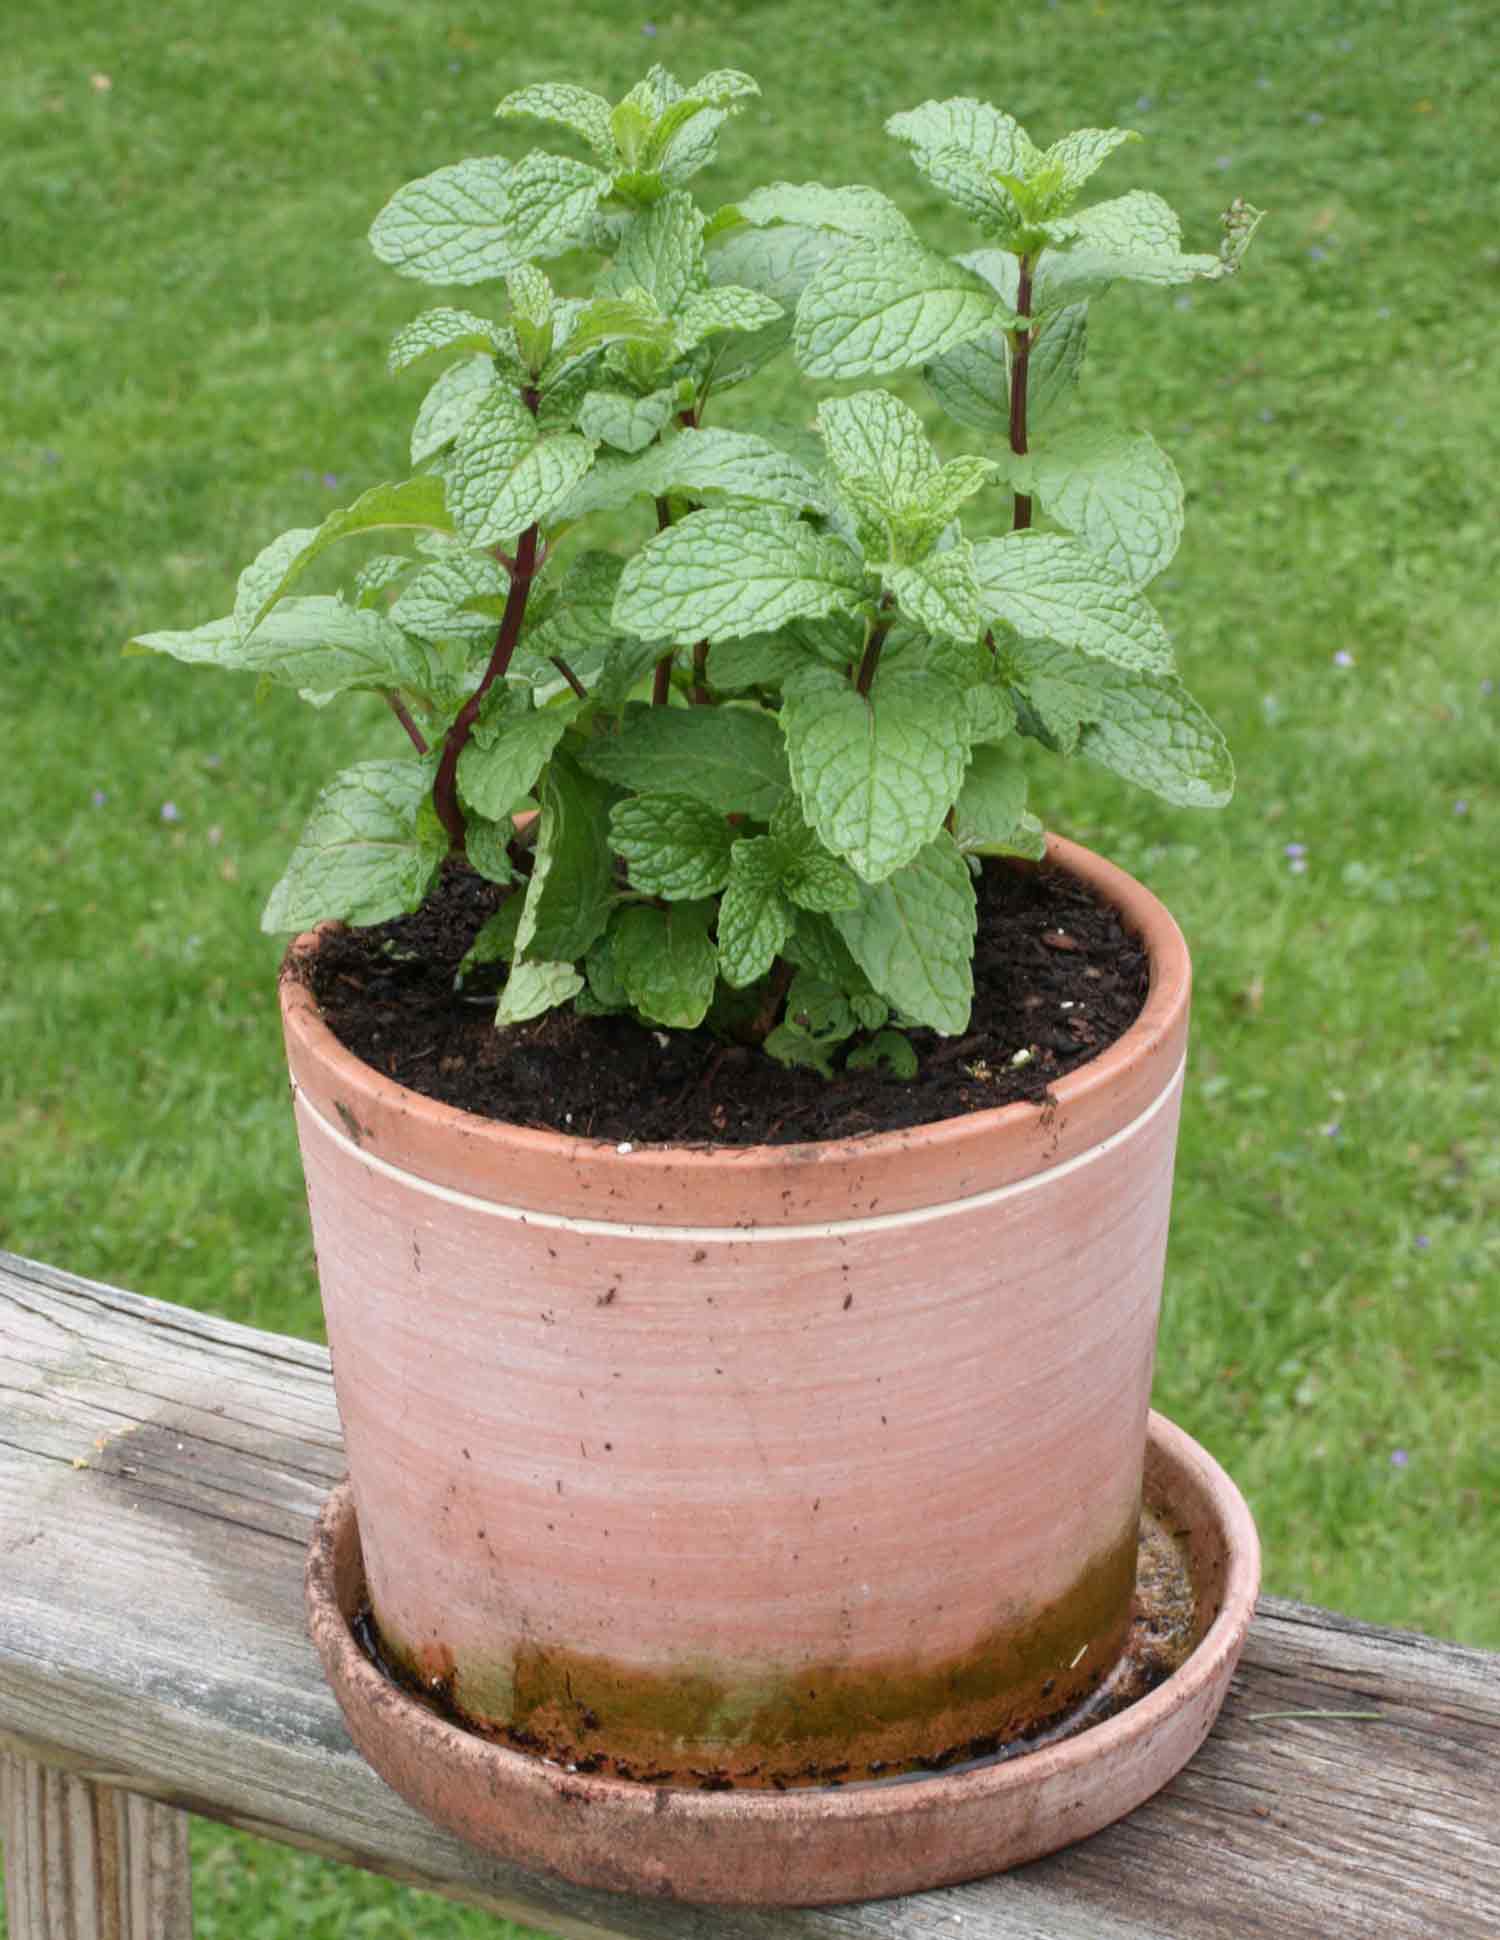 Spearmint growing in a pot.